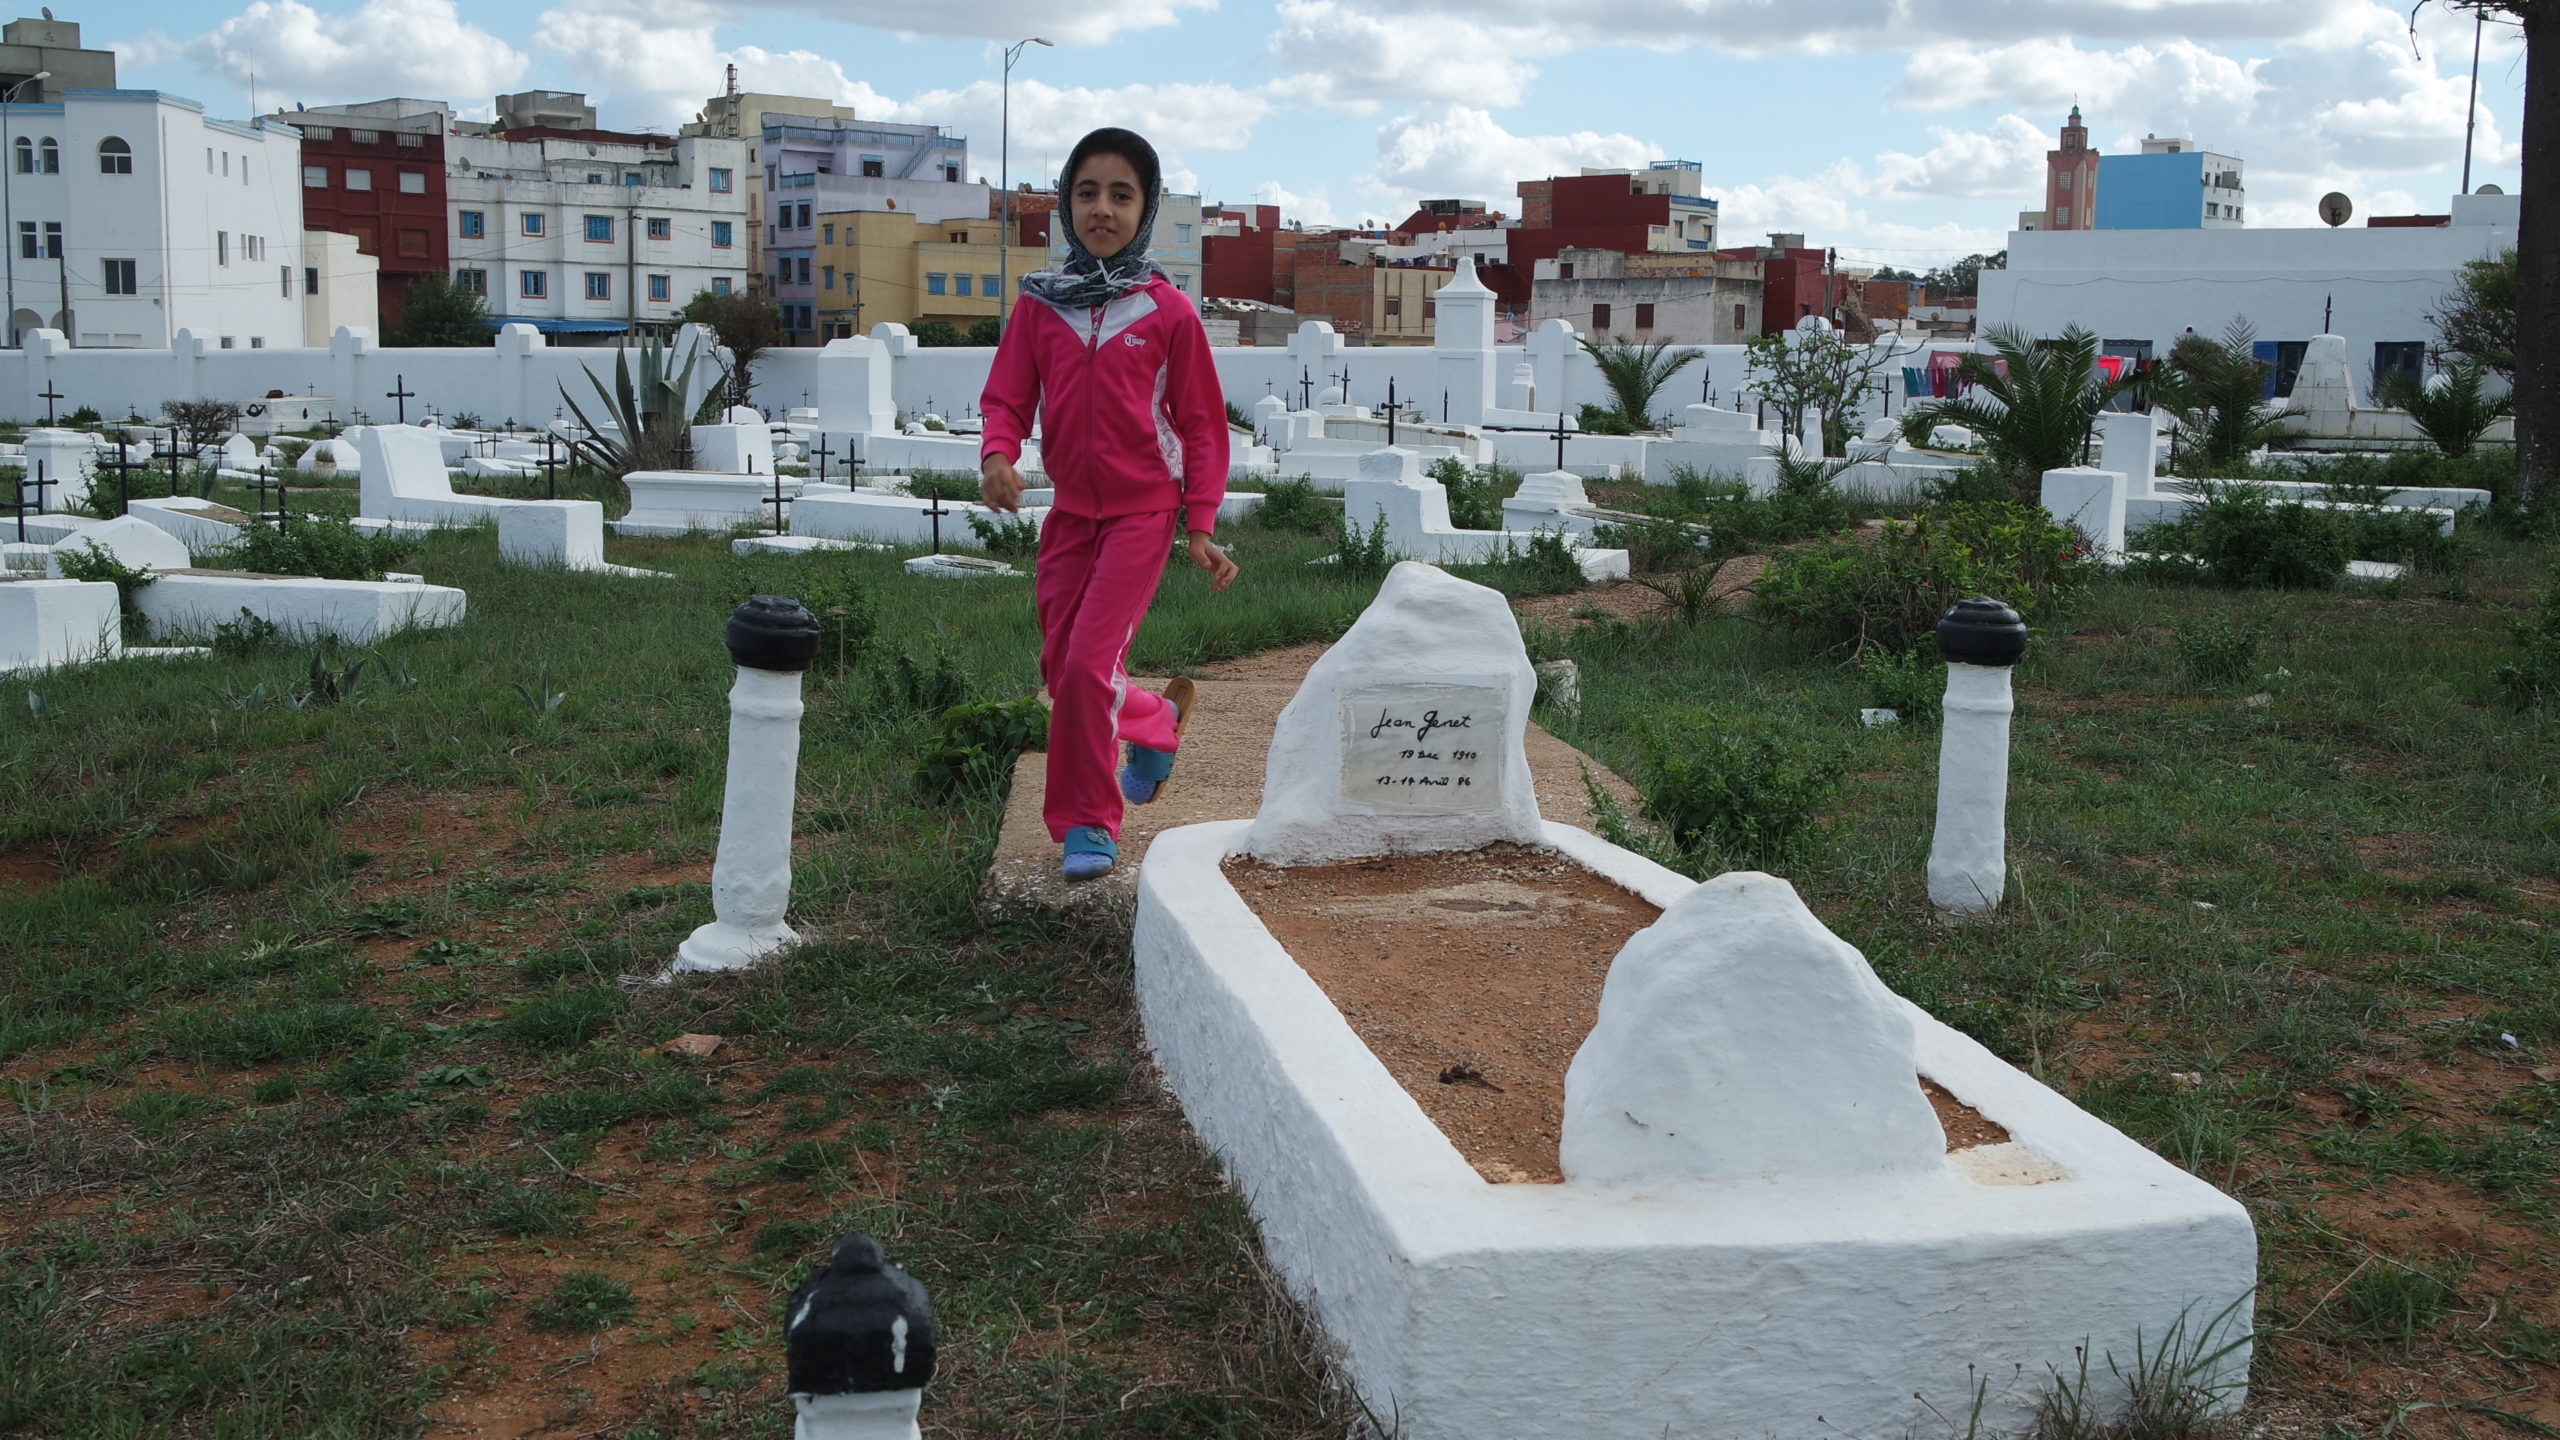 La petite Doha joue dans le cimetière, fait ses devoirs et « donne la classe » devant des tombes d’enfants (La Prod - Laya Prod - TV 2M Maroc)